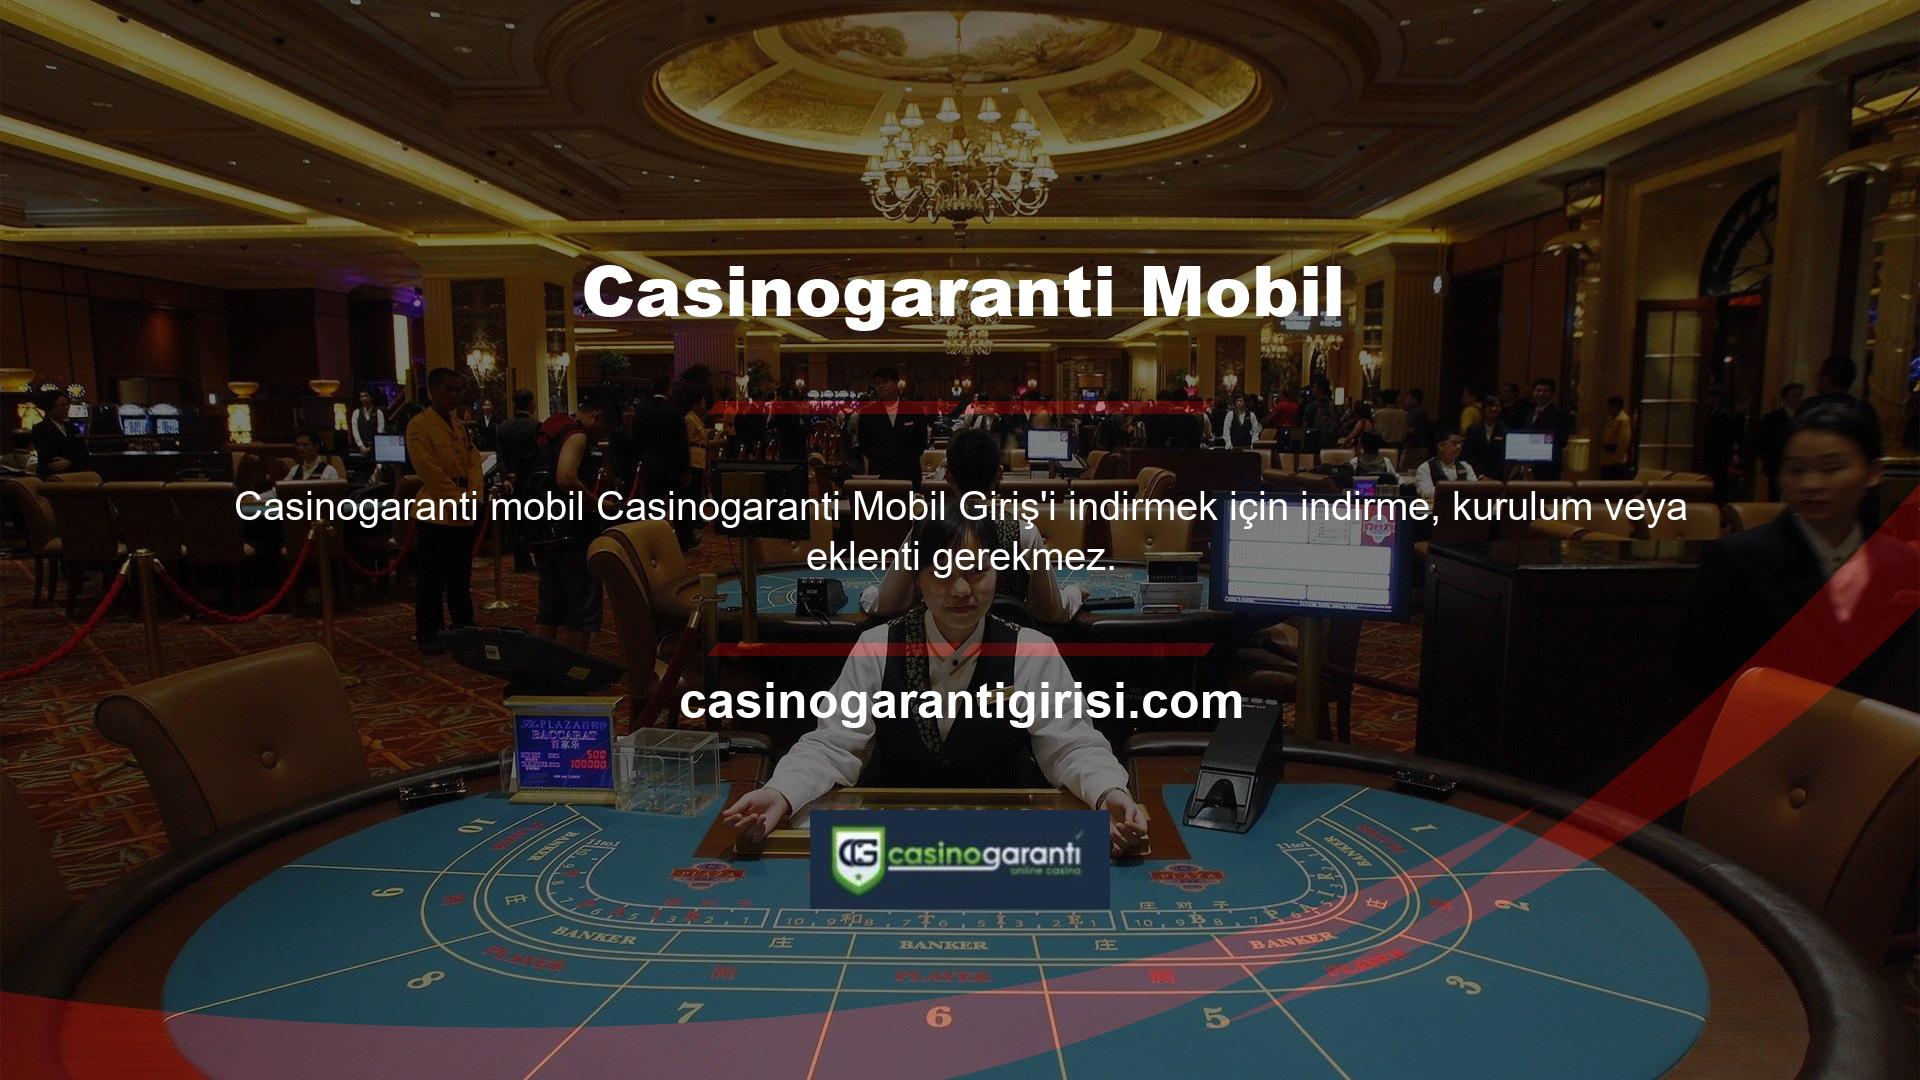 Casinogaranti Mobil'e direkt giriş yaptığınızda özel olarak tasarlanmış bir sayfa ile karşılaşacaksınız